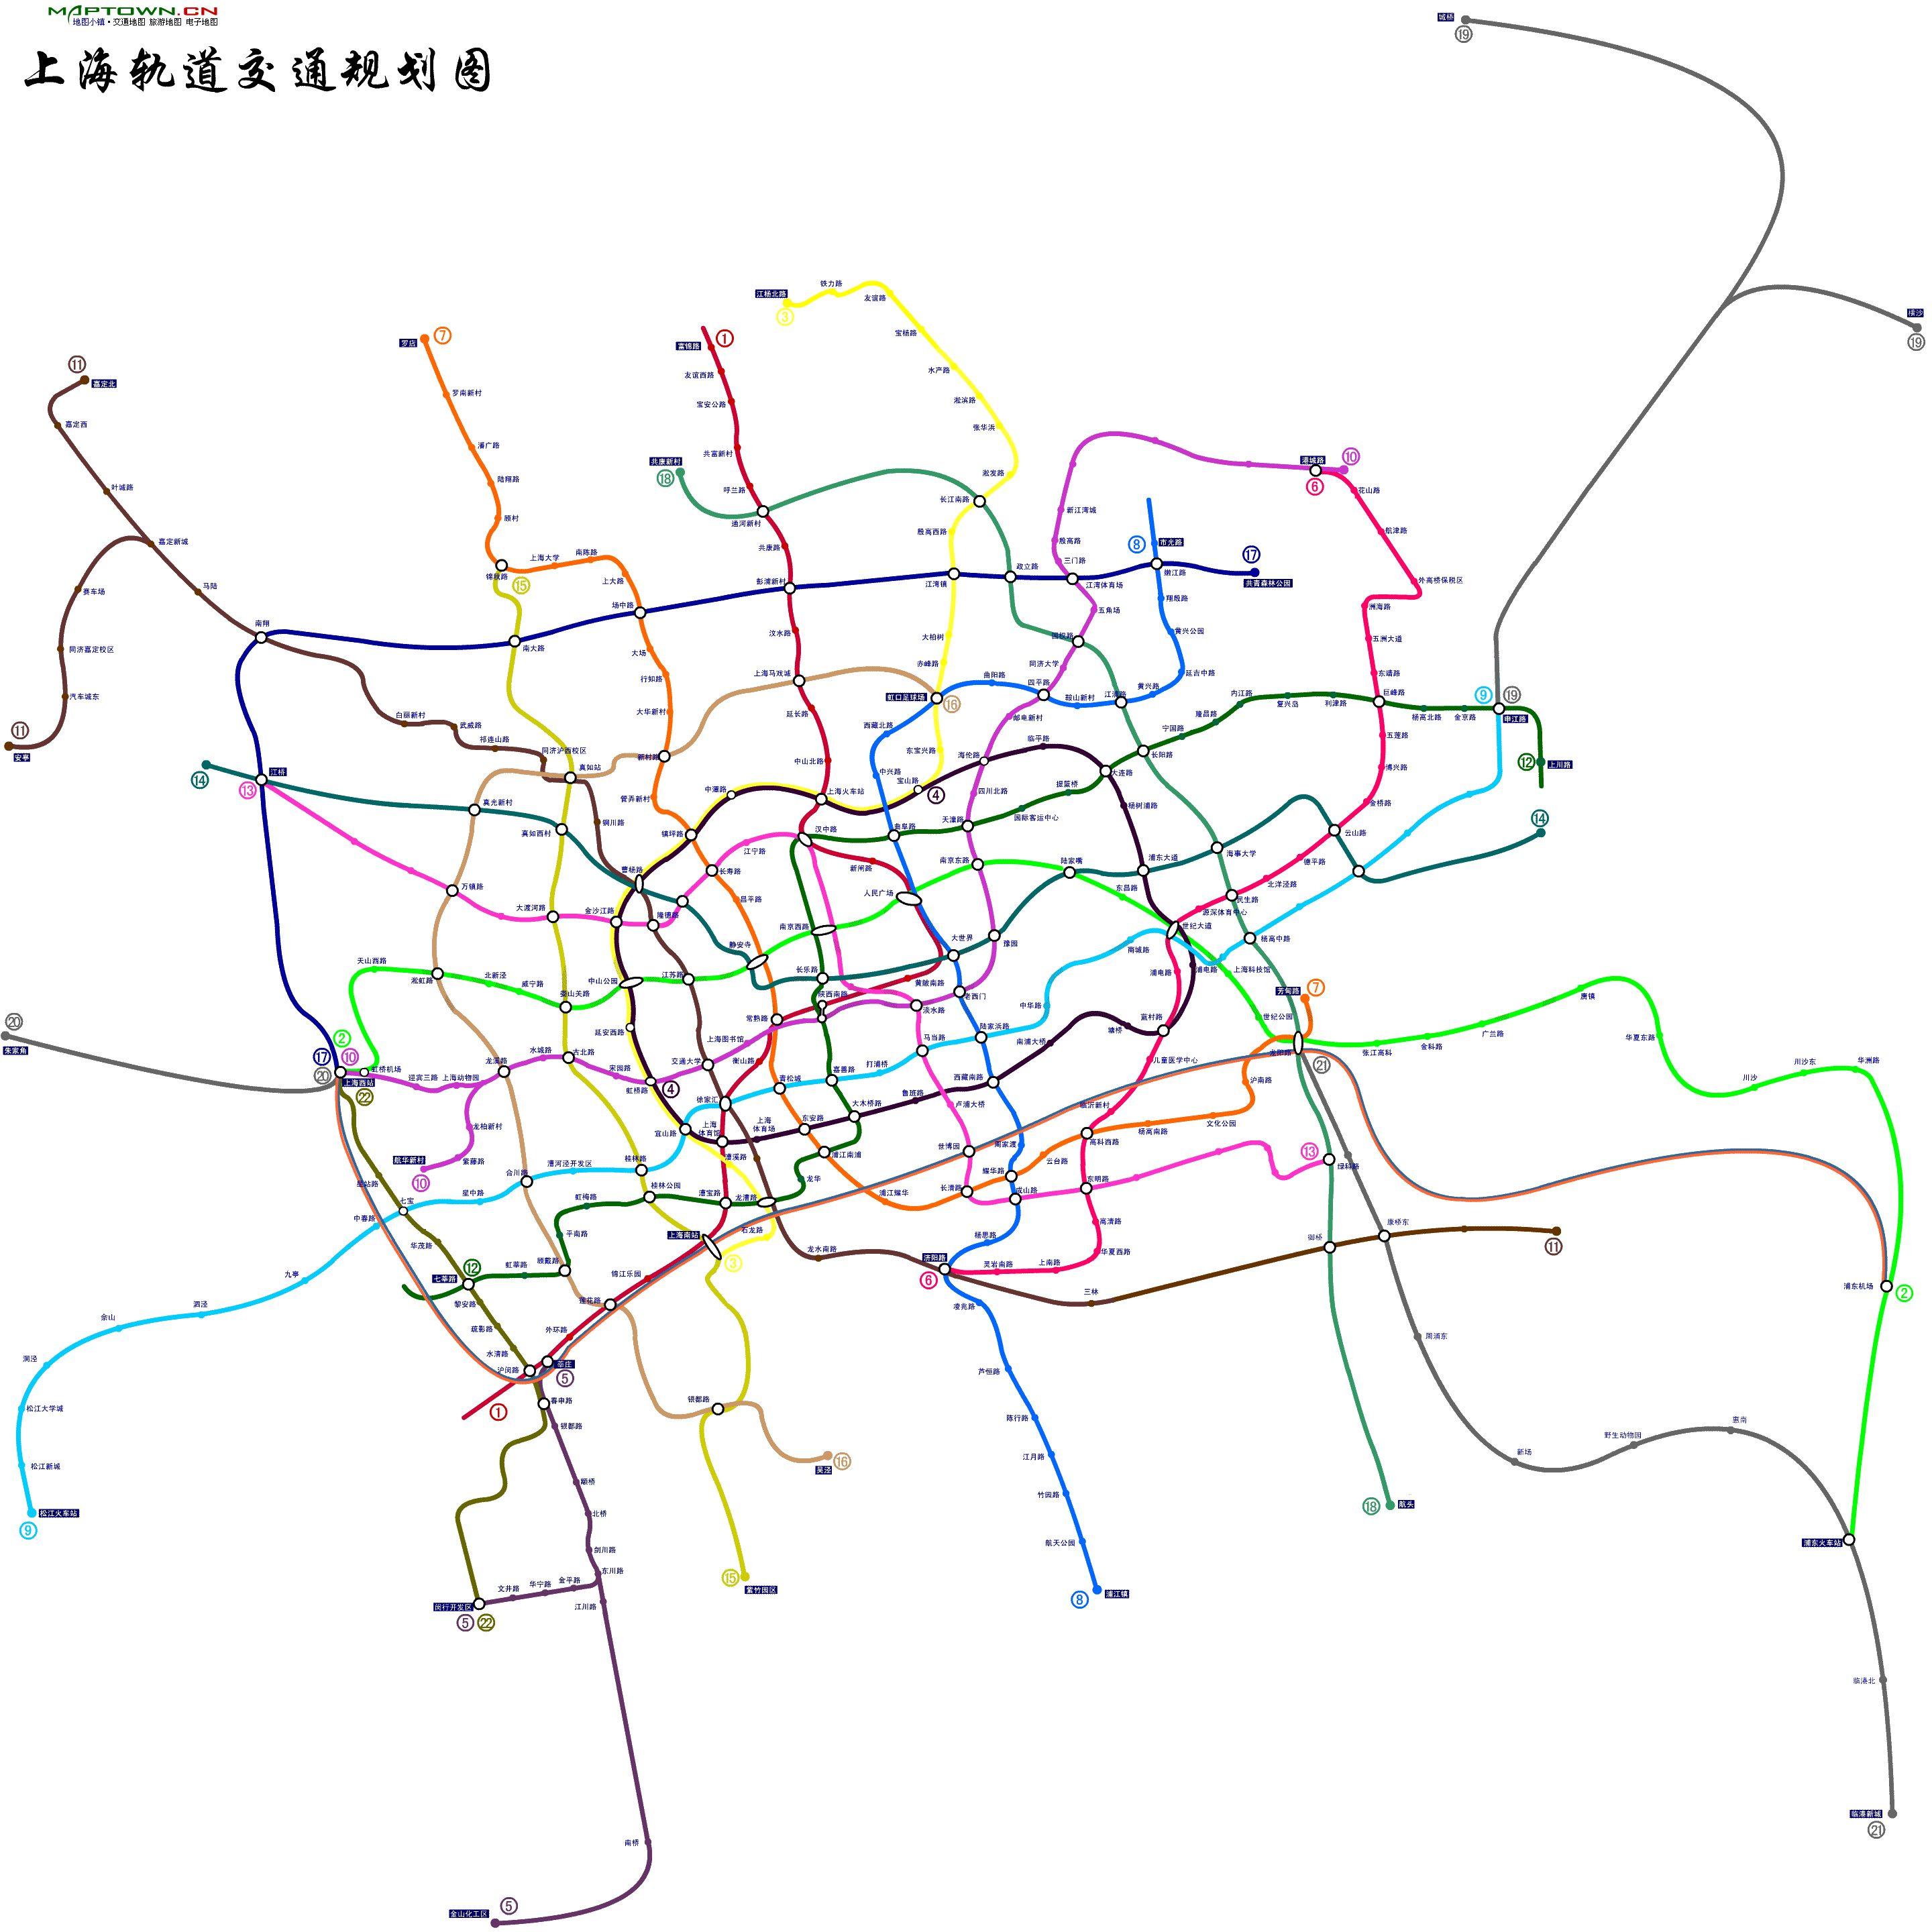 上海轨道交通规划图 1-22 号